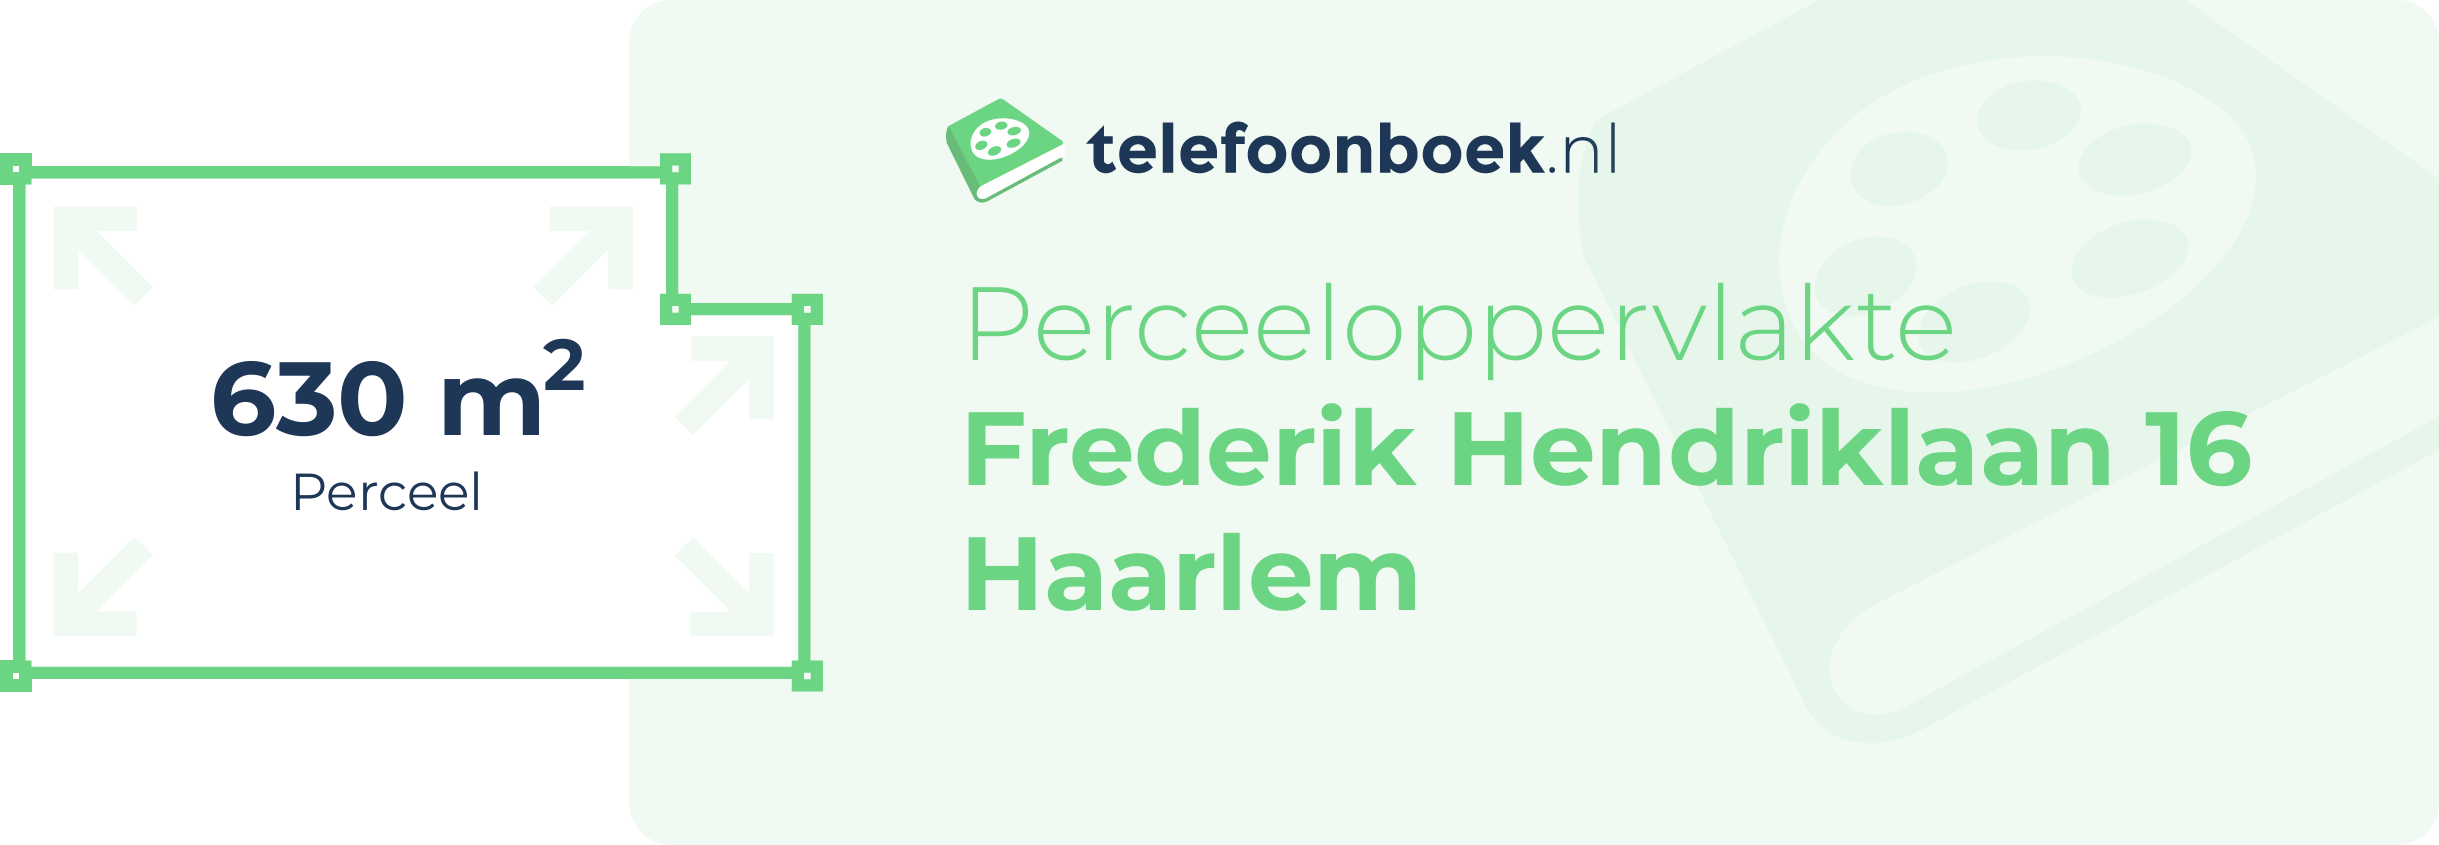 Perceeloppervlakte Frederik Hendriklaan 16 Haarlem